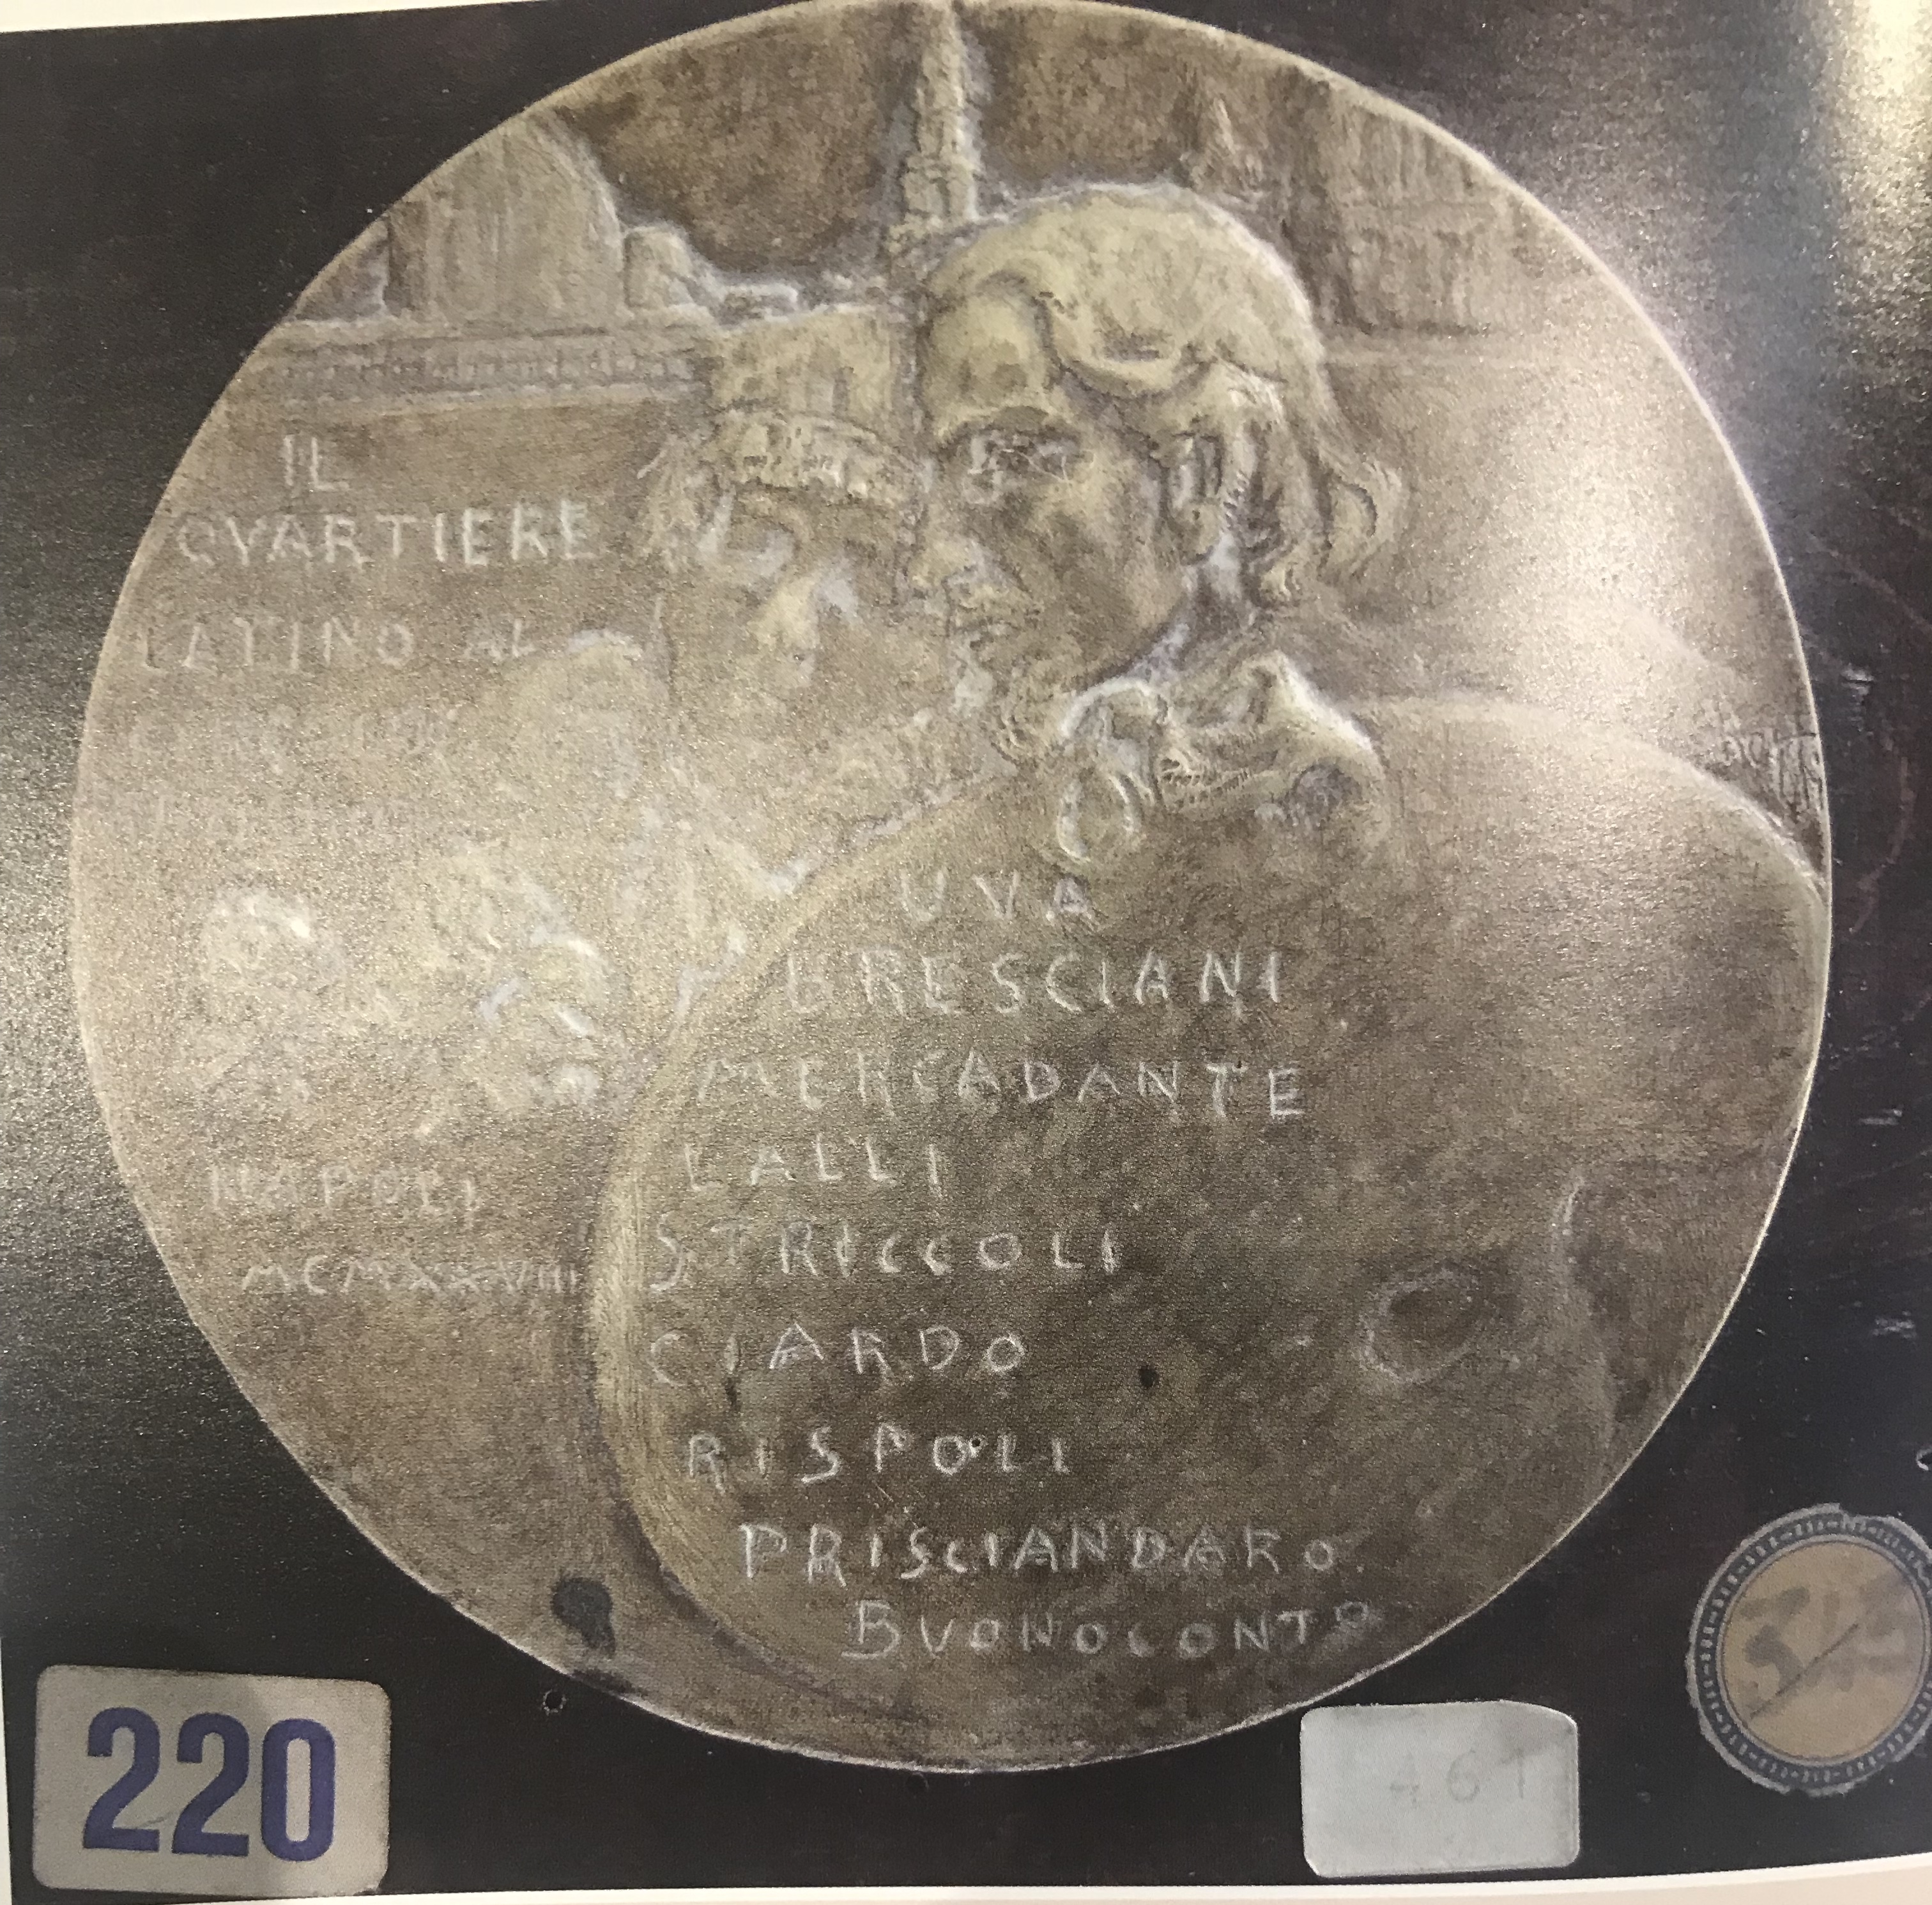 Il Quarteire Latino, Medaglia commemorativa (medaglia, opera isolata) di Puchetti, Enzo (attribuito) - ambito Italia meridionale (prima metà XX)